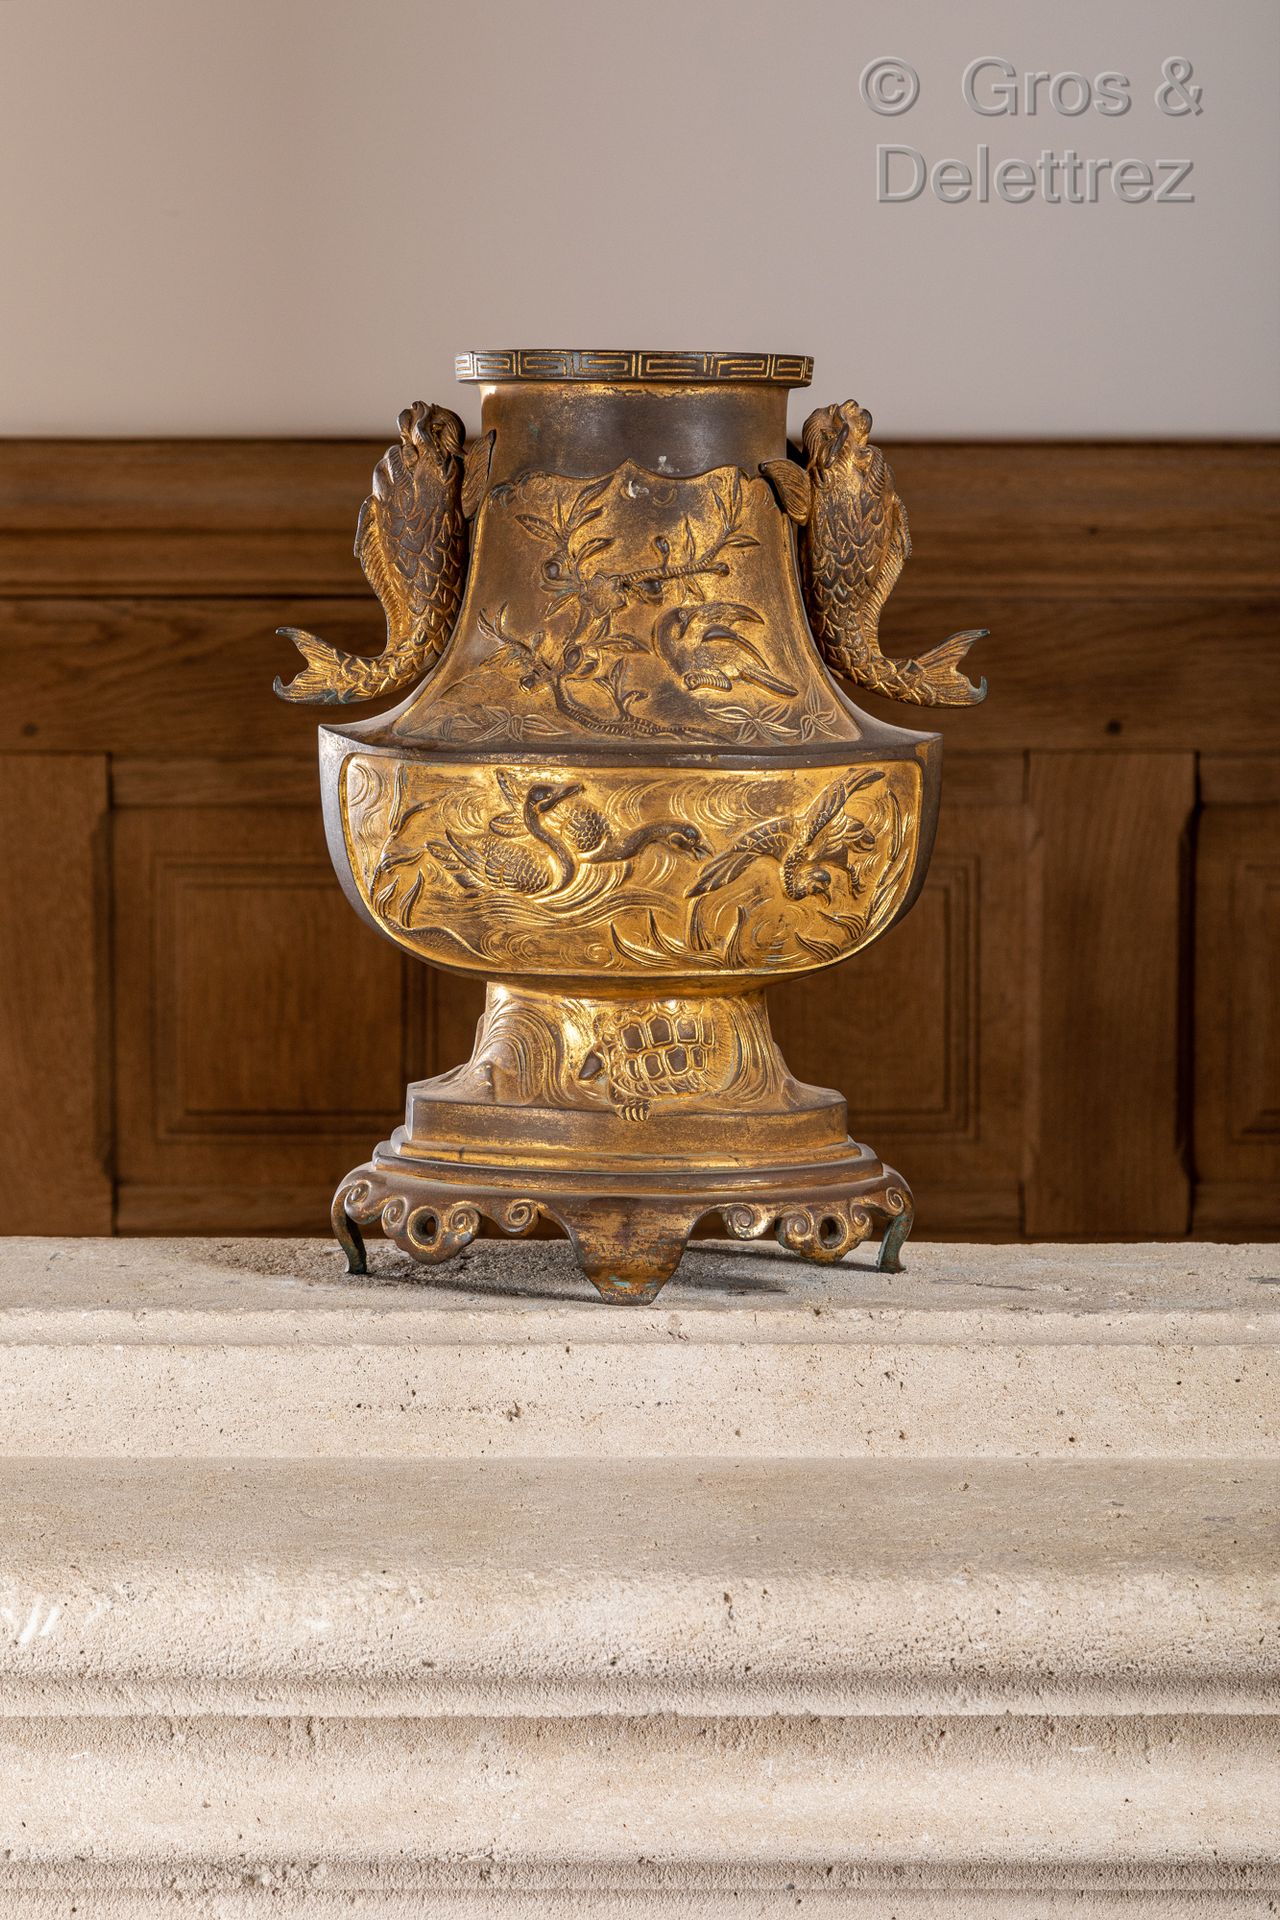 JAPON 一件镀金的青铜花瓶，轻浮地装饰着海龟、云彩背景上的龙、鹅和鸟，侧面的把手是海豚的形状。

19世纪

高：35厘米